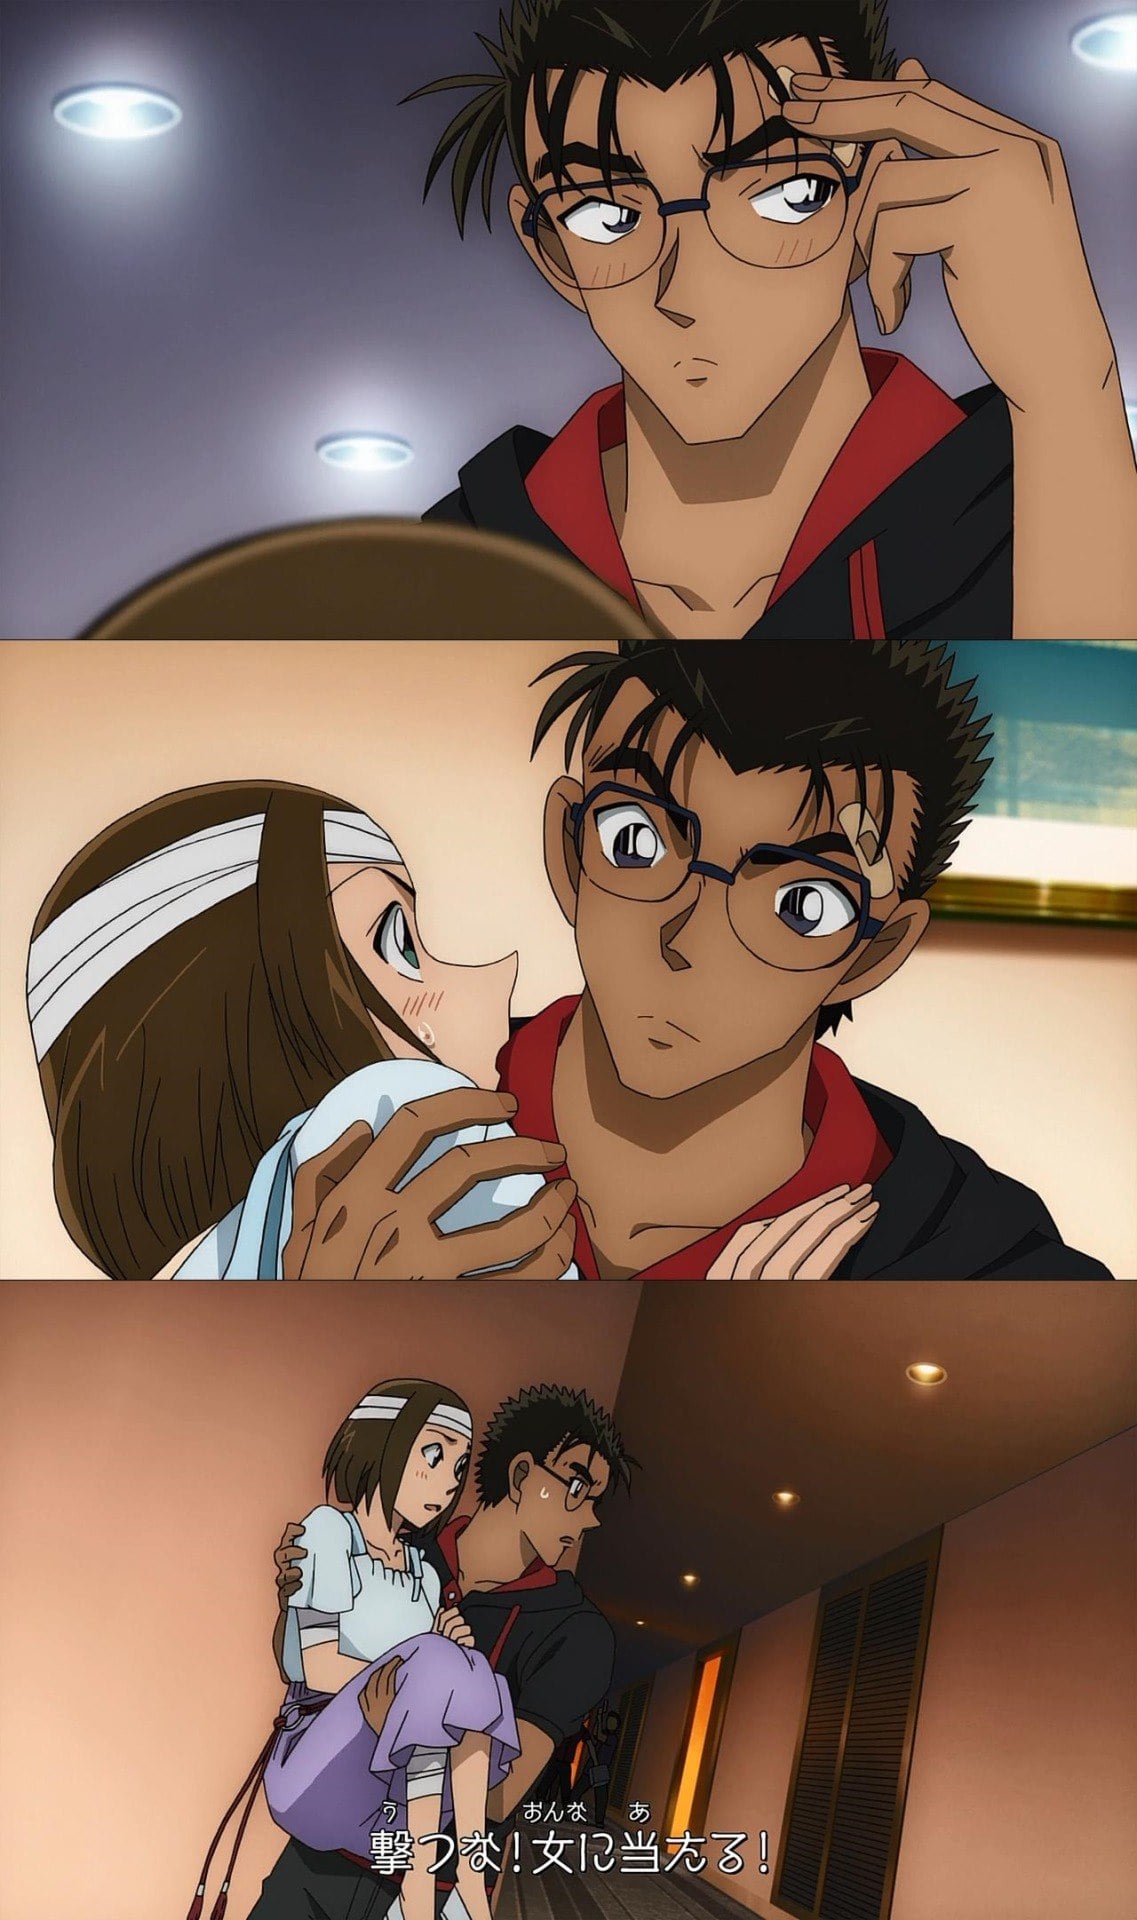 khoảnh khắc tình bể bình của cặp Sonoko và Makoto